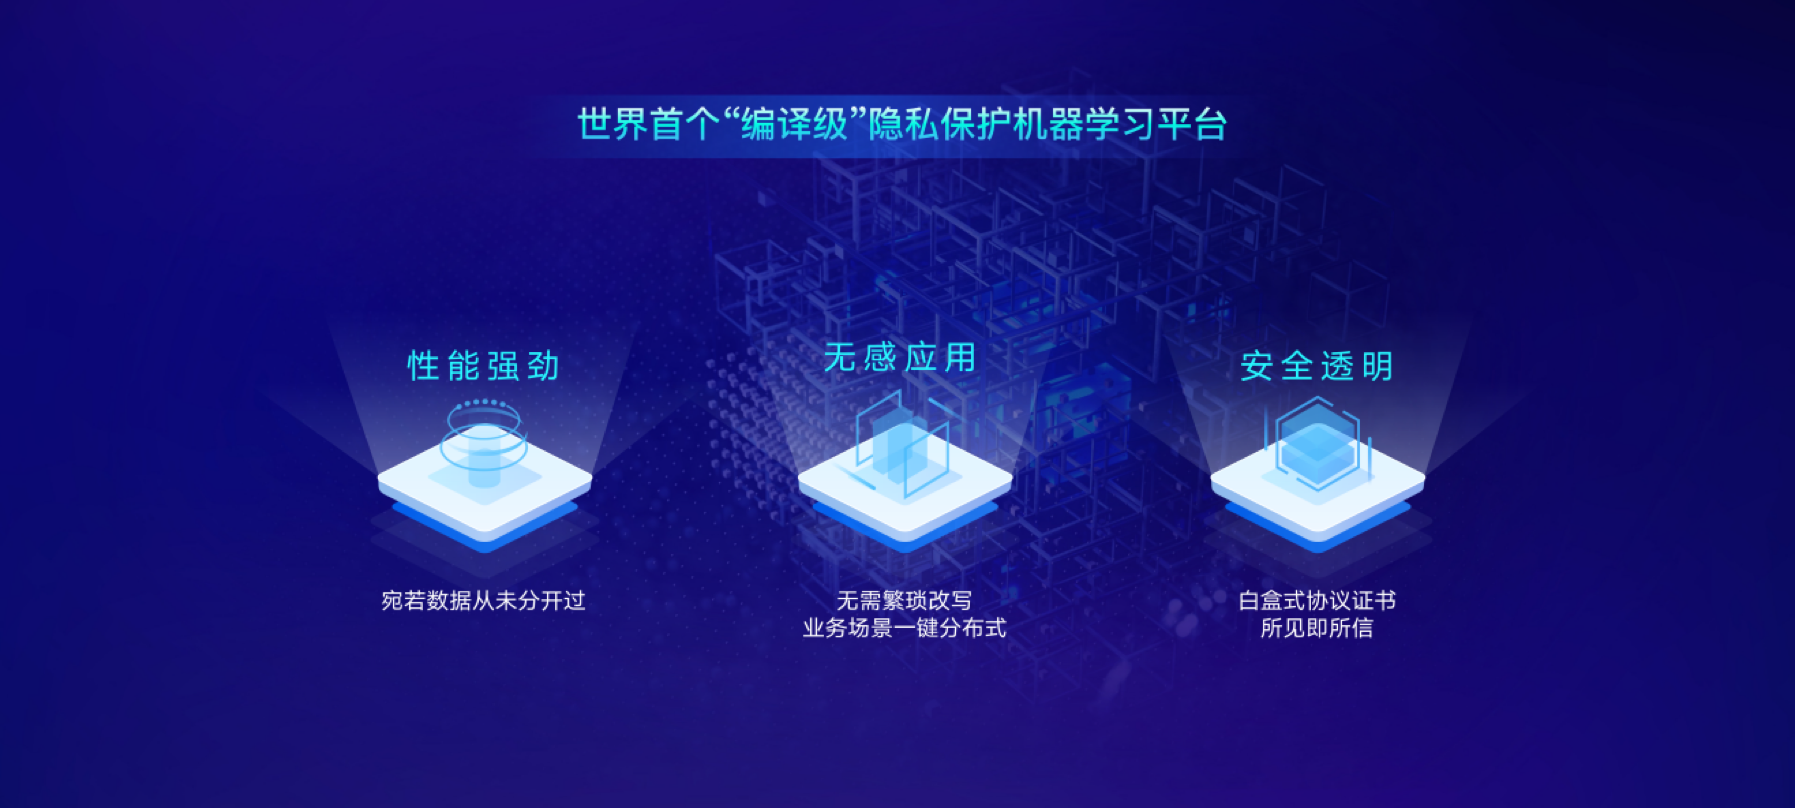 清华系AI公司瑞莱智慧发布首个企业级隐私保护机器学习平台